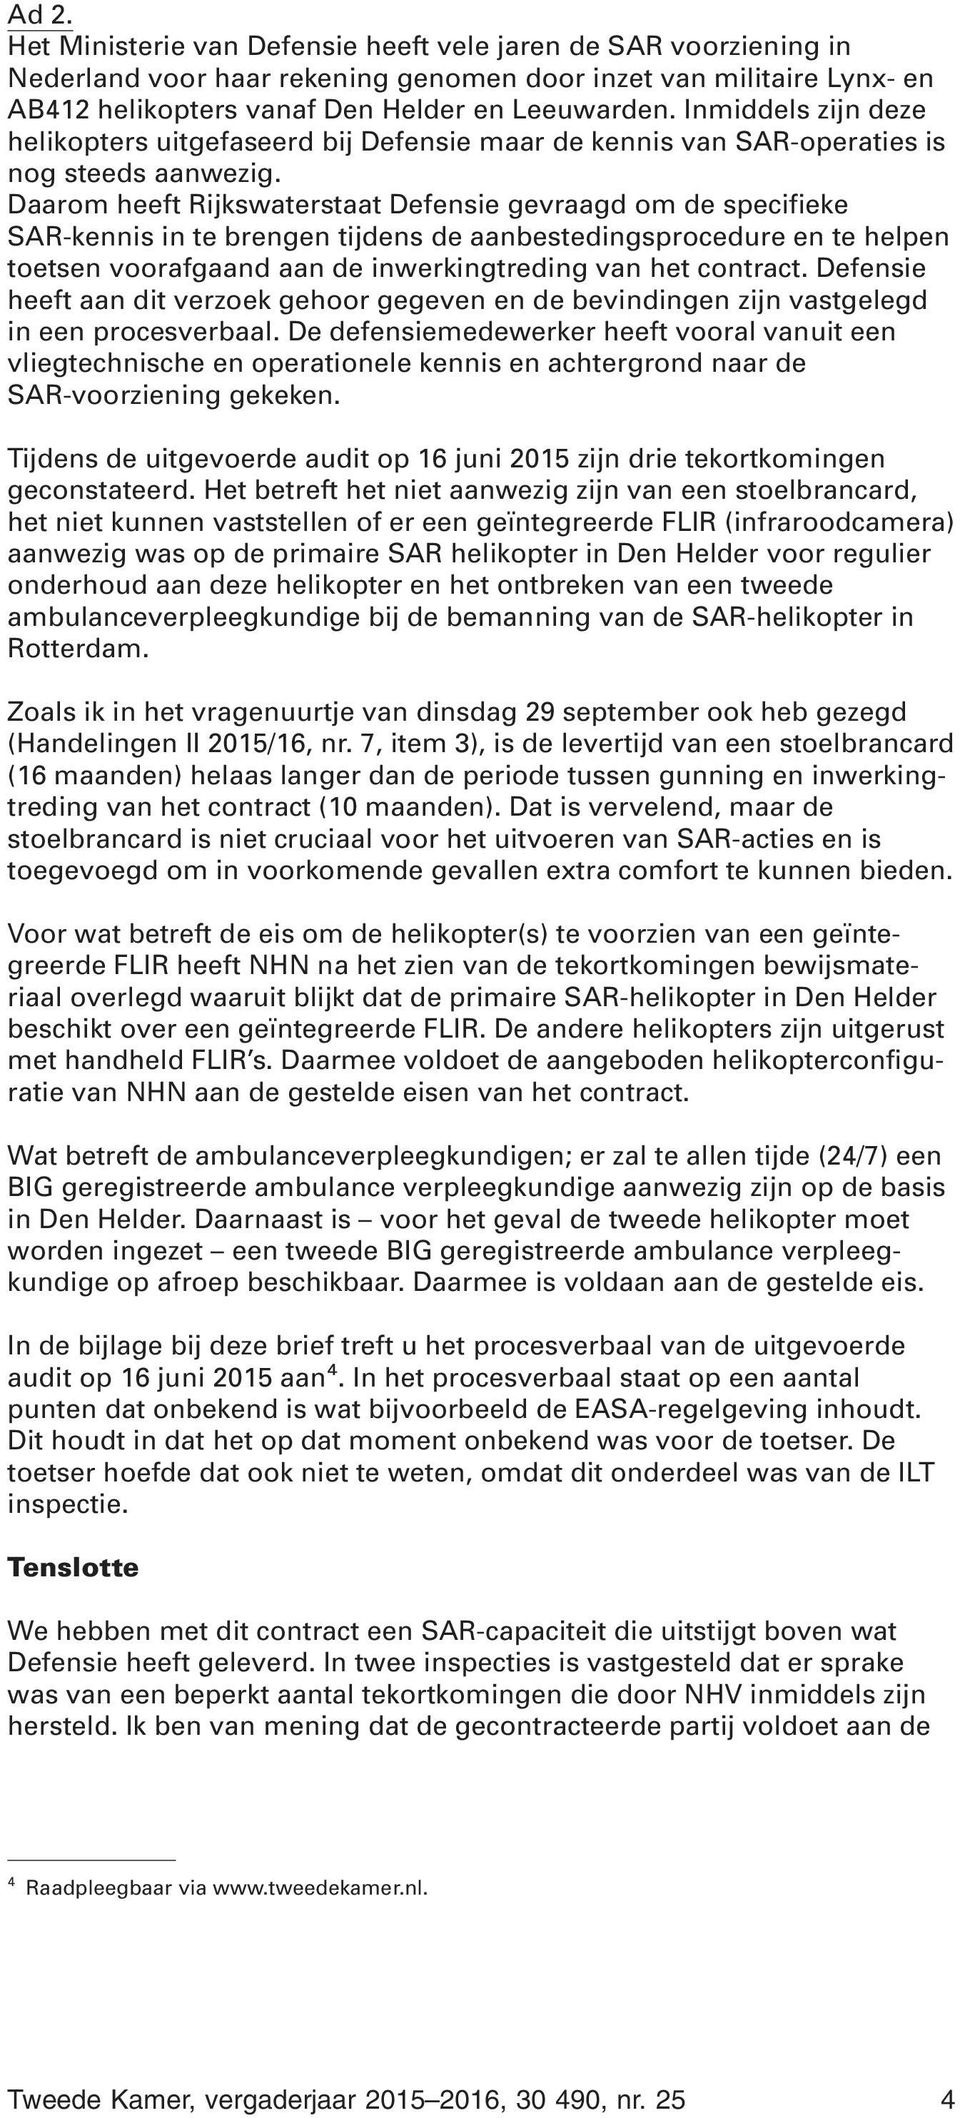 Daarom heeft Rijkswaterstaat Defensie gevraagd om de specifieke SAR-kennis in te brengen tijdens de aanbestedingsprocedure en te helpen toetsen voorafgaand aan de inwerkingtreding van het contract.